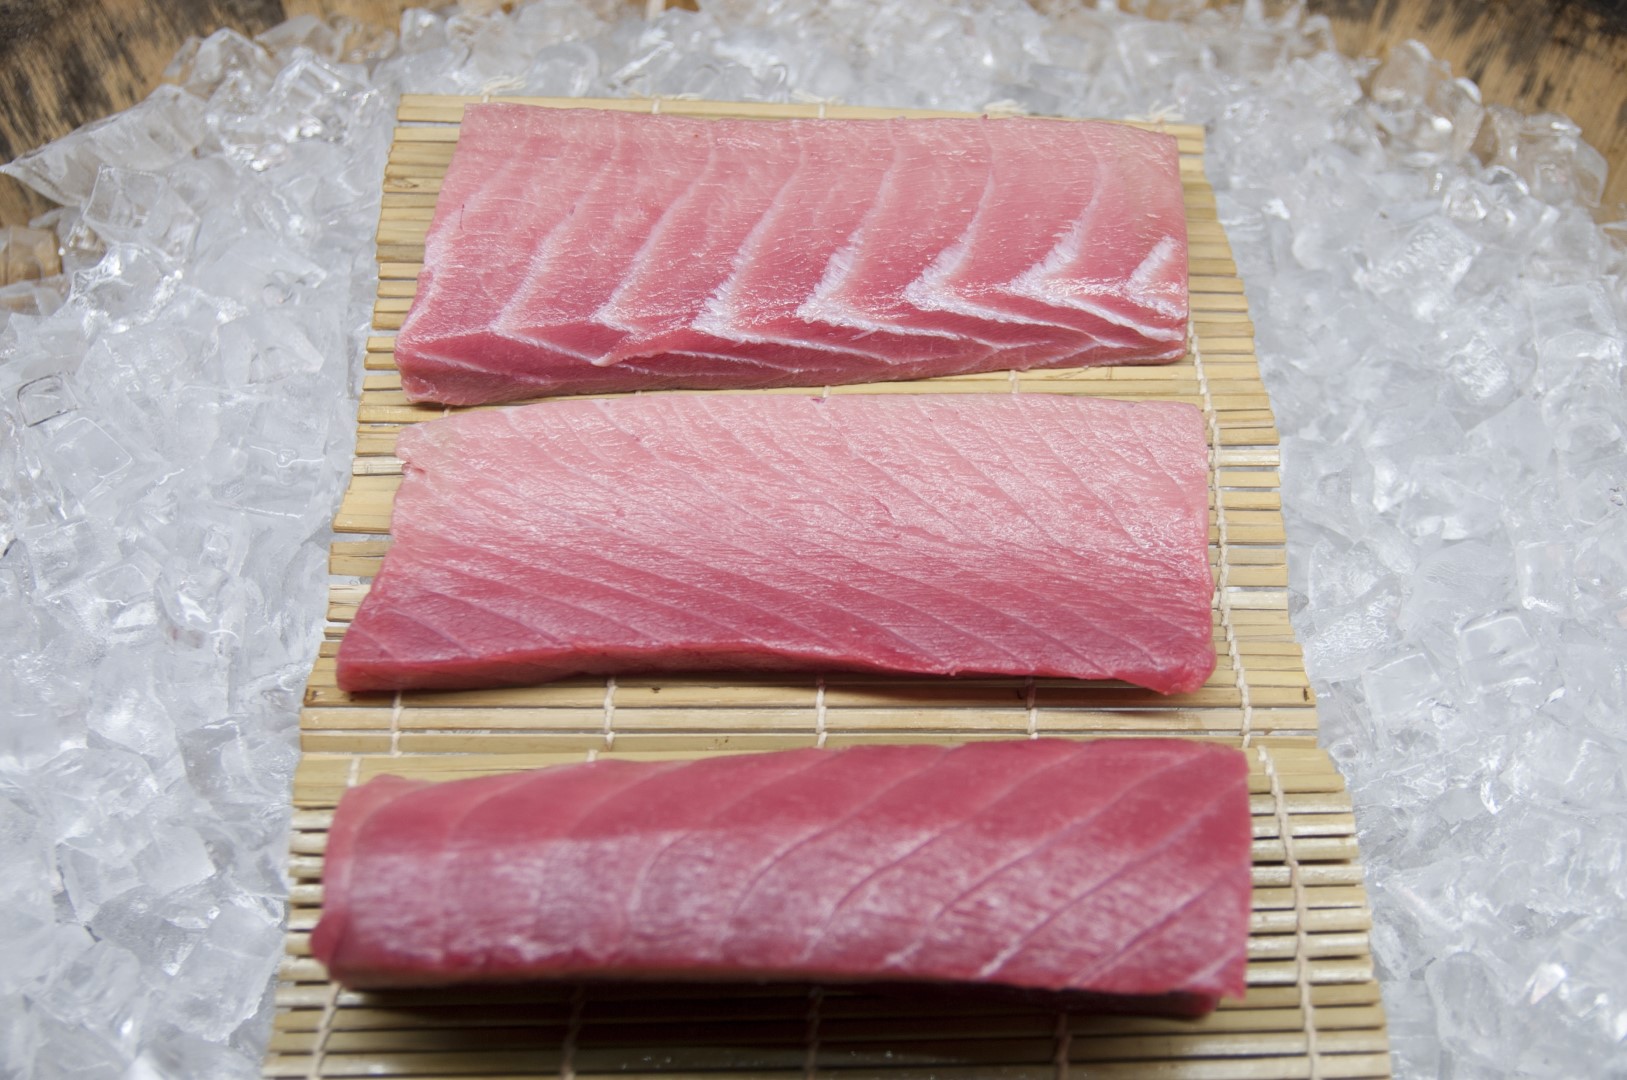 Option 1: Bluefin Tuna